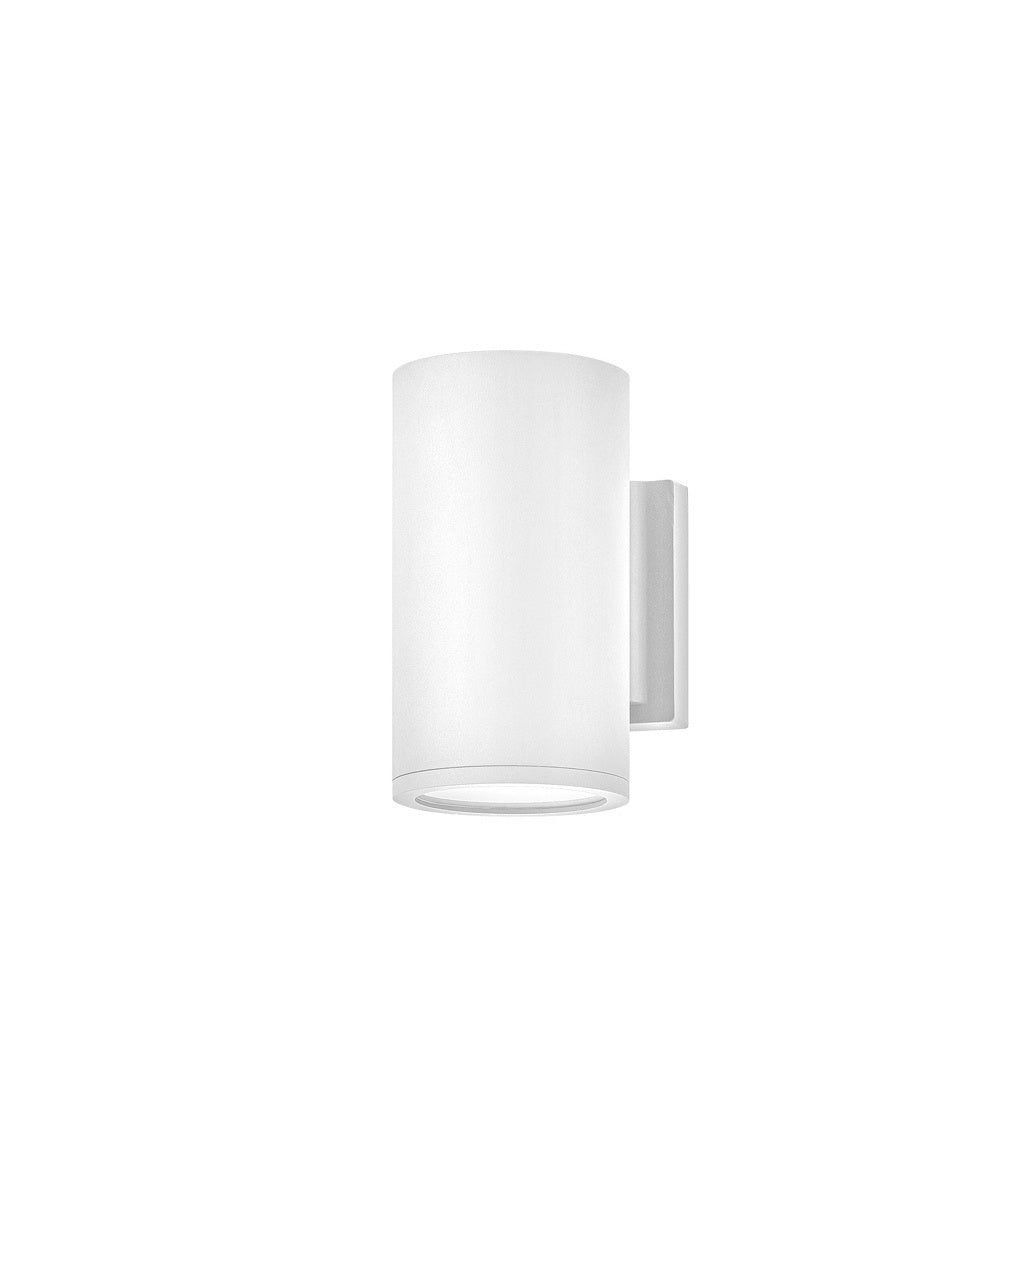 Silo Small Down Light Wall Mount Lantern in Satin White